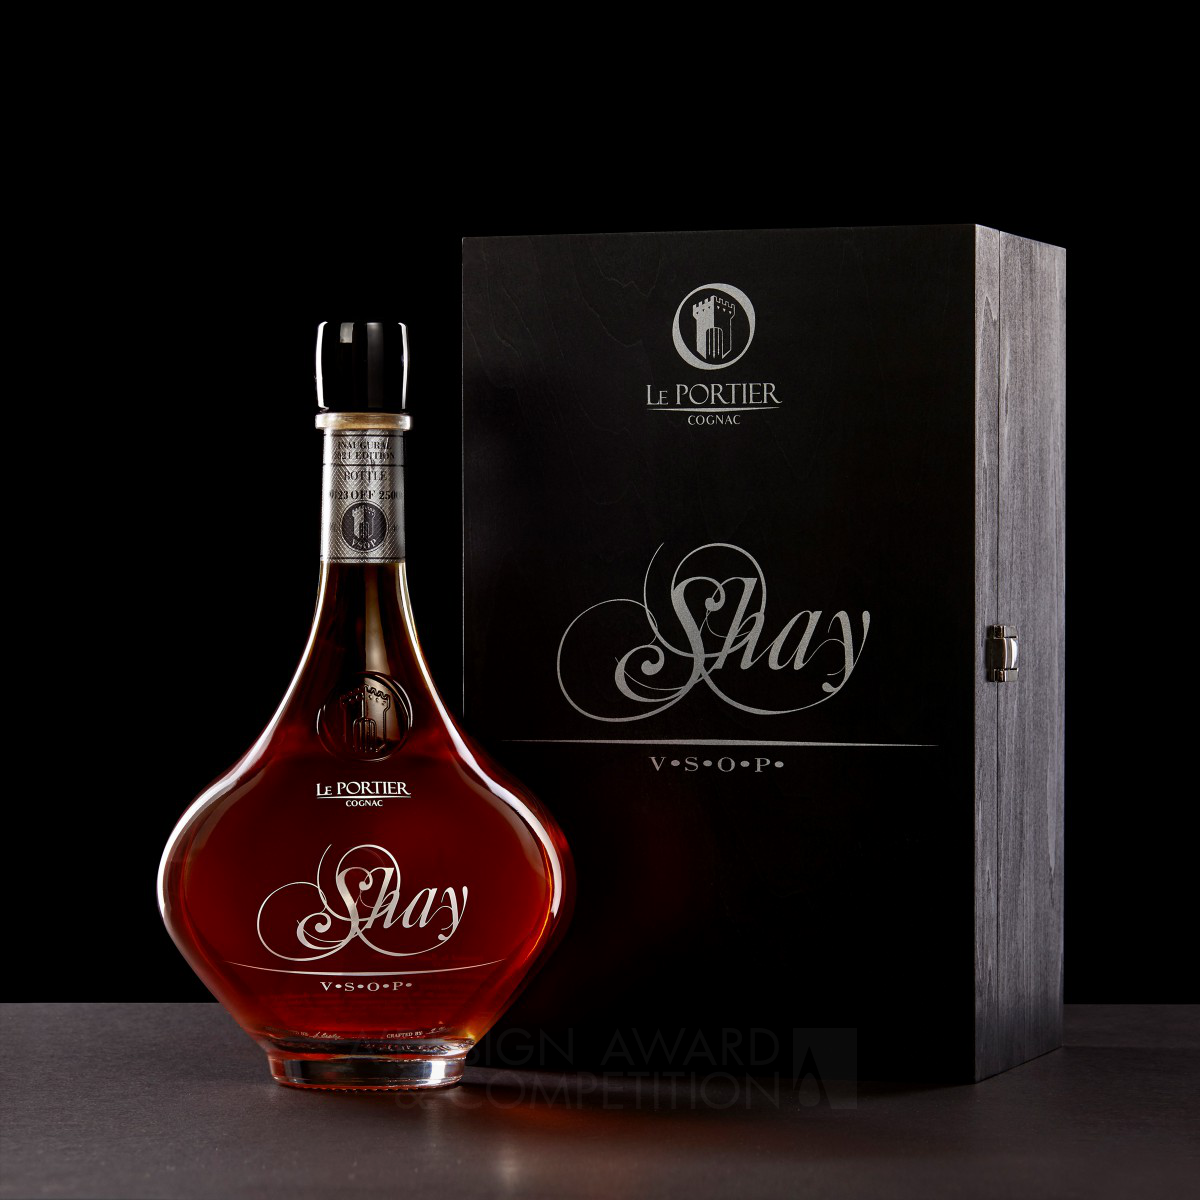 Shay Vsop Luxury Cognac by Tiago Russo